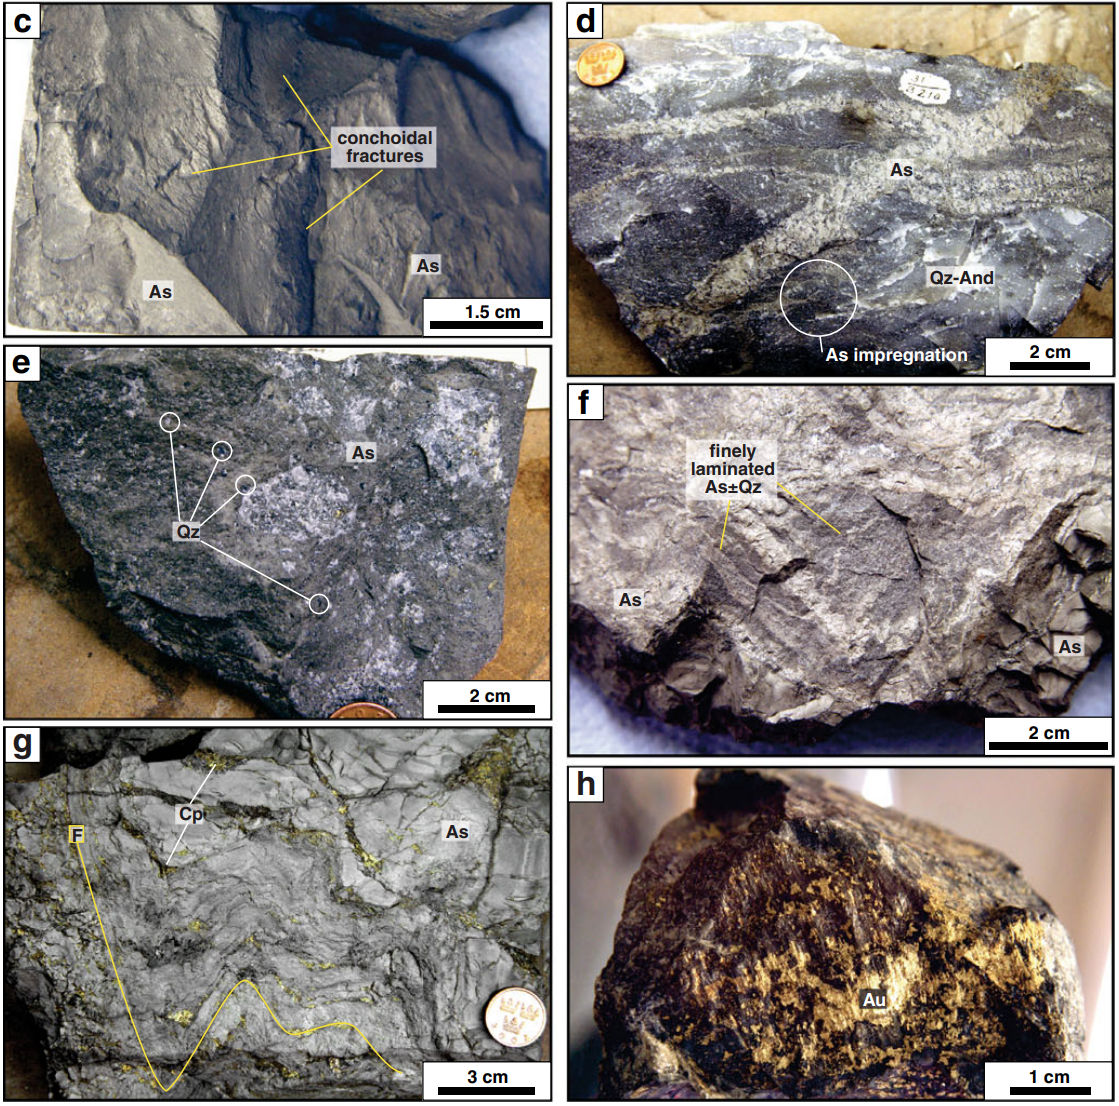 Ore textures in metamorphic rock from the Boliden deposit, Sweden.